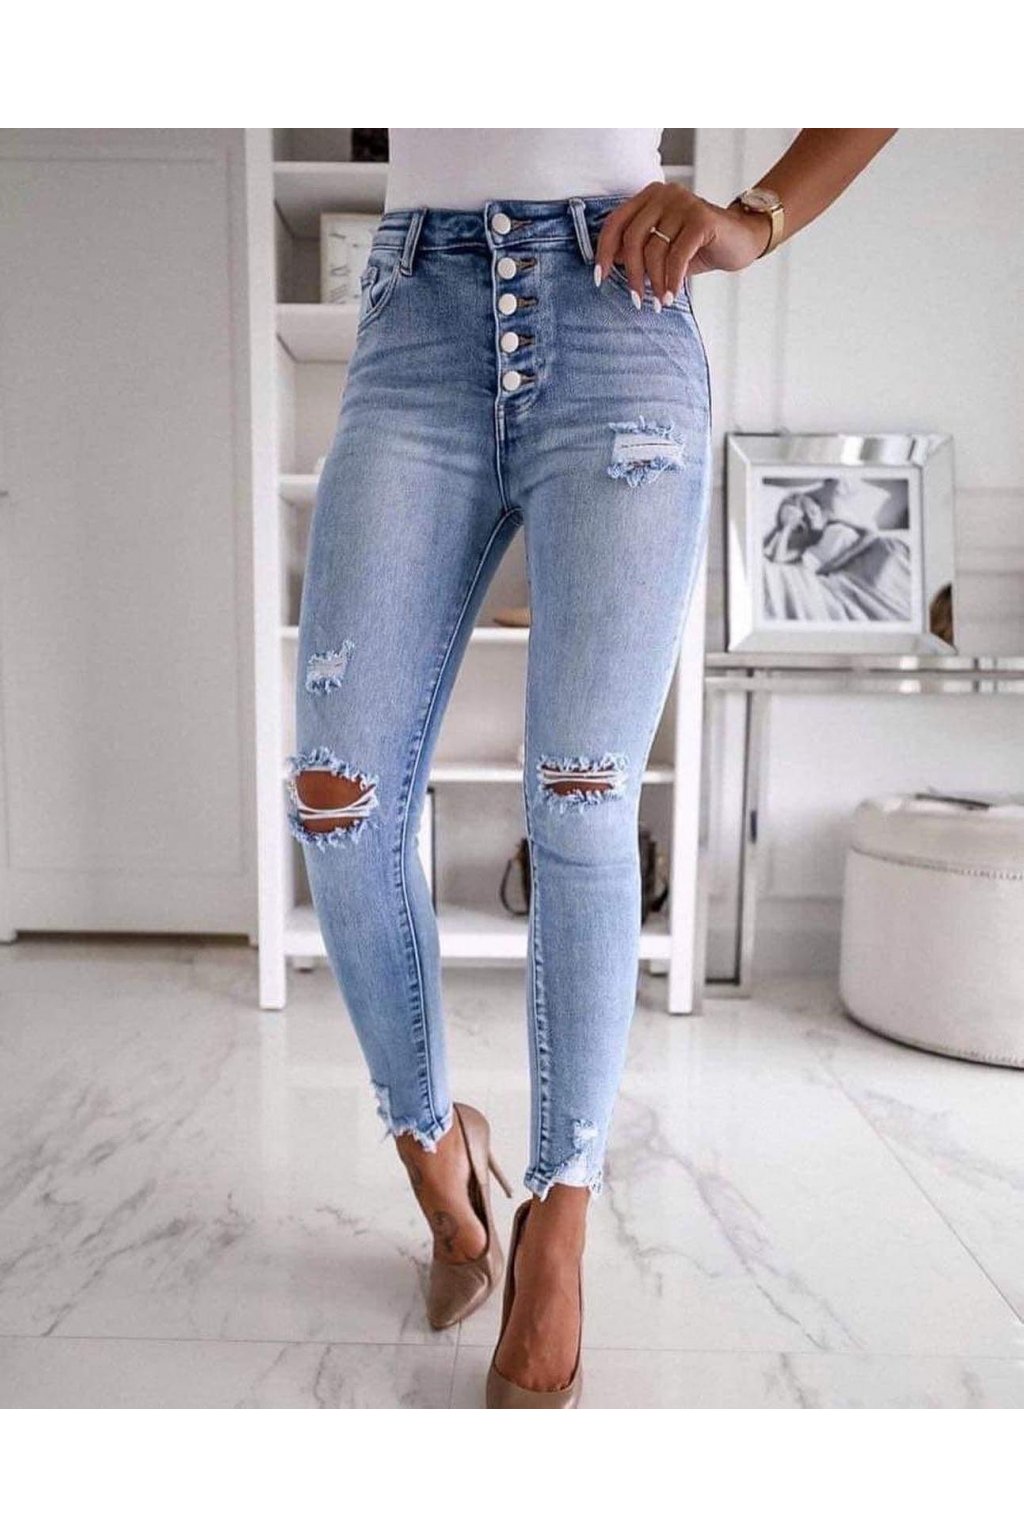 dámské jeans trendy s elastanem trhané s knoflíčky